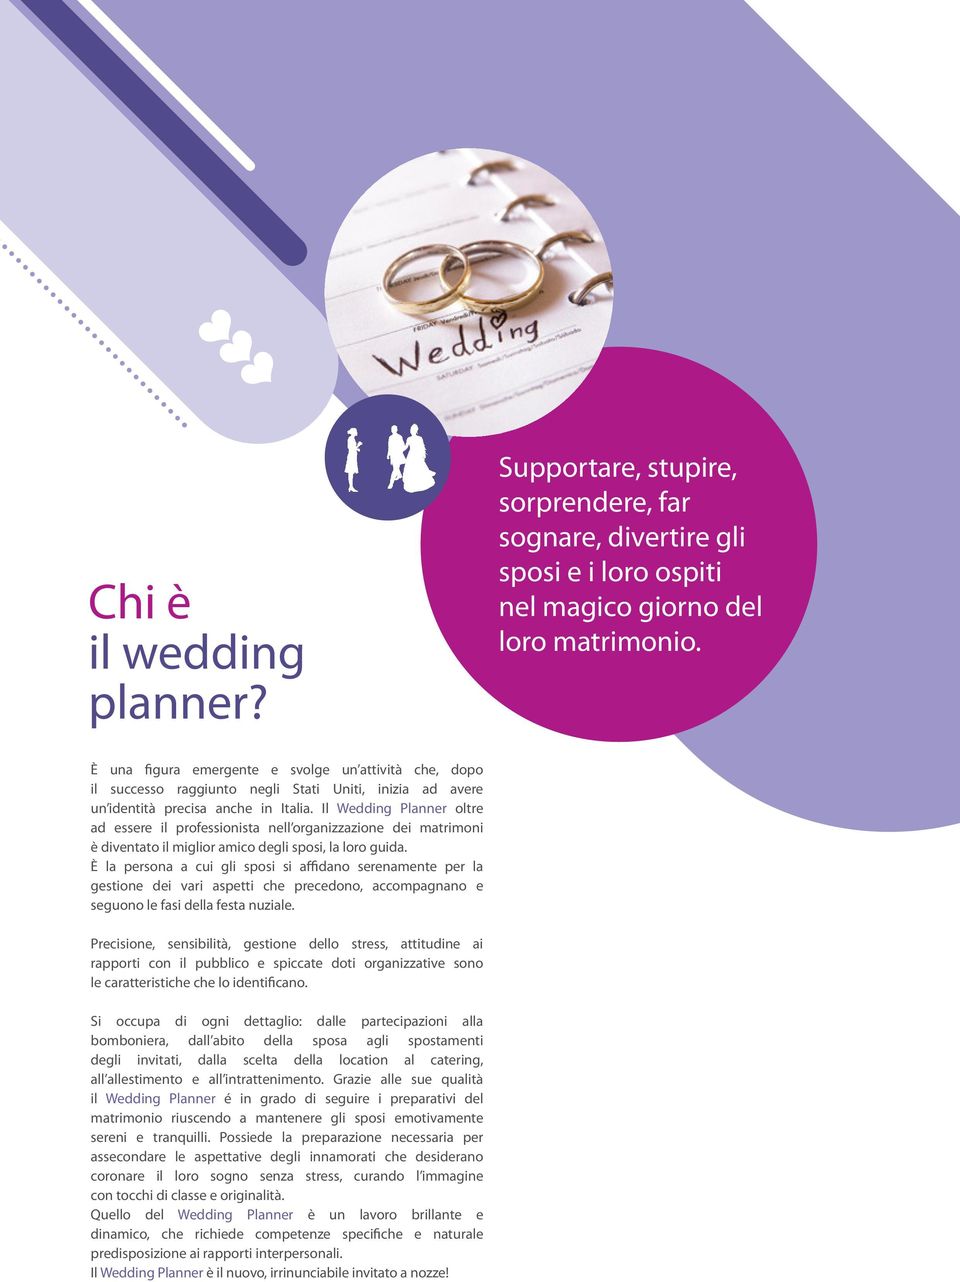 Il Wedding Planner oltre ad essere il professionista nell organizzazione dei matrimoni è diventato il miglior amico degli sposi, la loro guida.